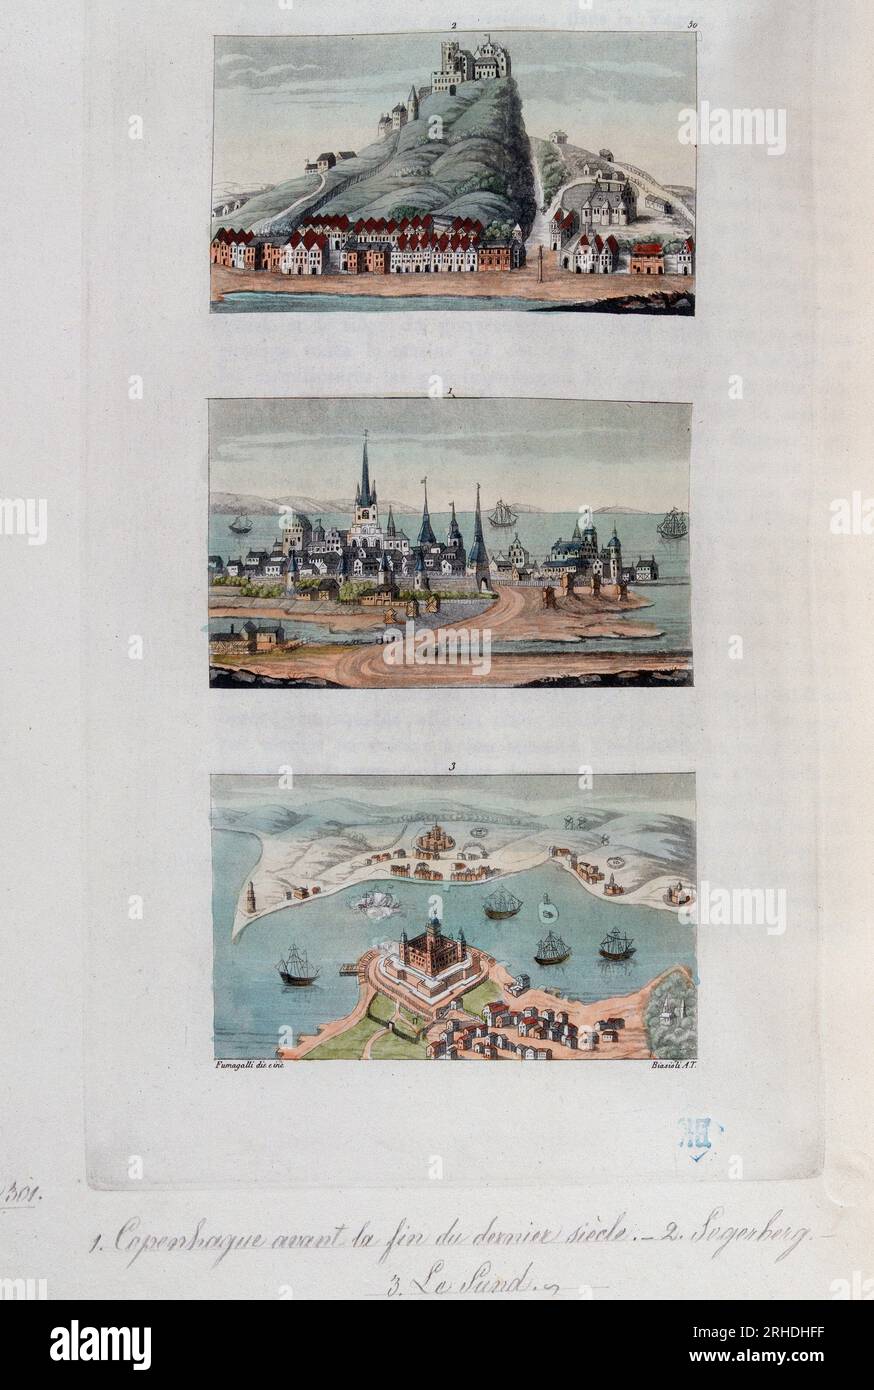 Les villes danoises de Copenhague, Segerberg et Sund, fin XVIII siecle - in "le costume ancien et moderne" par Ferrario, 1819-20 Foto Stock